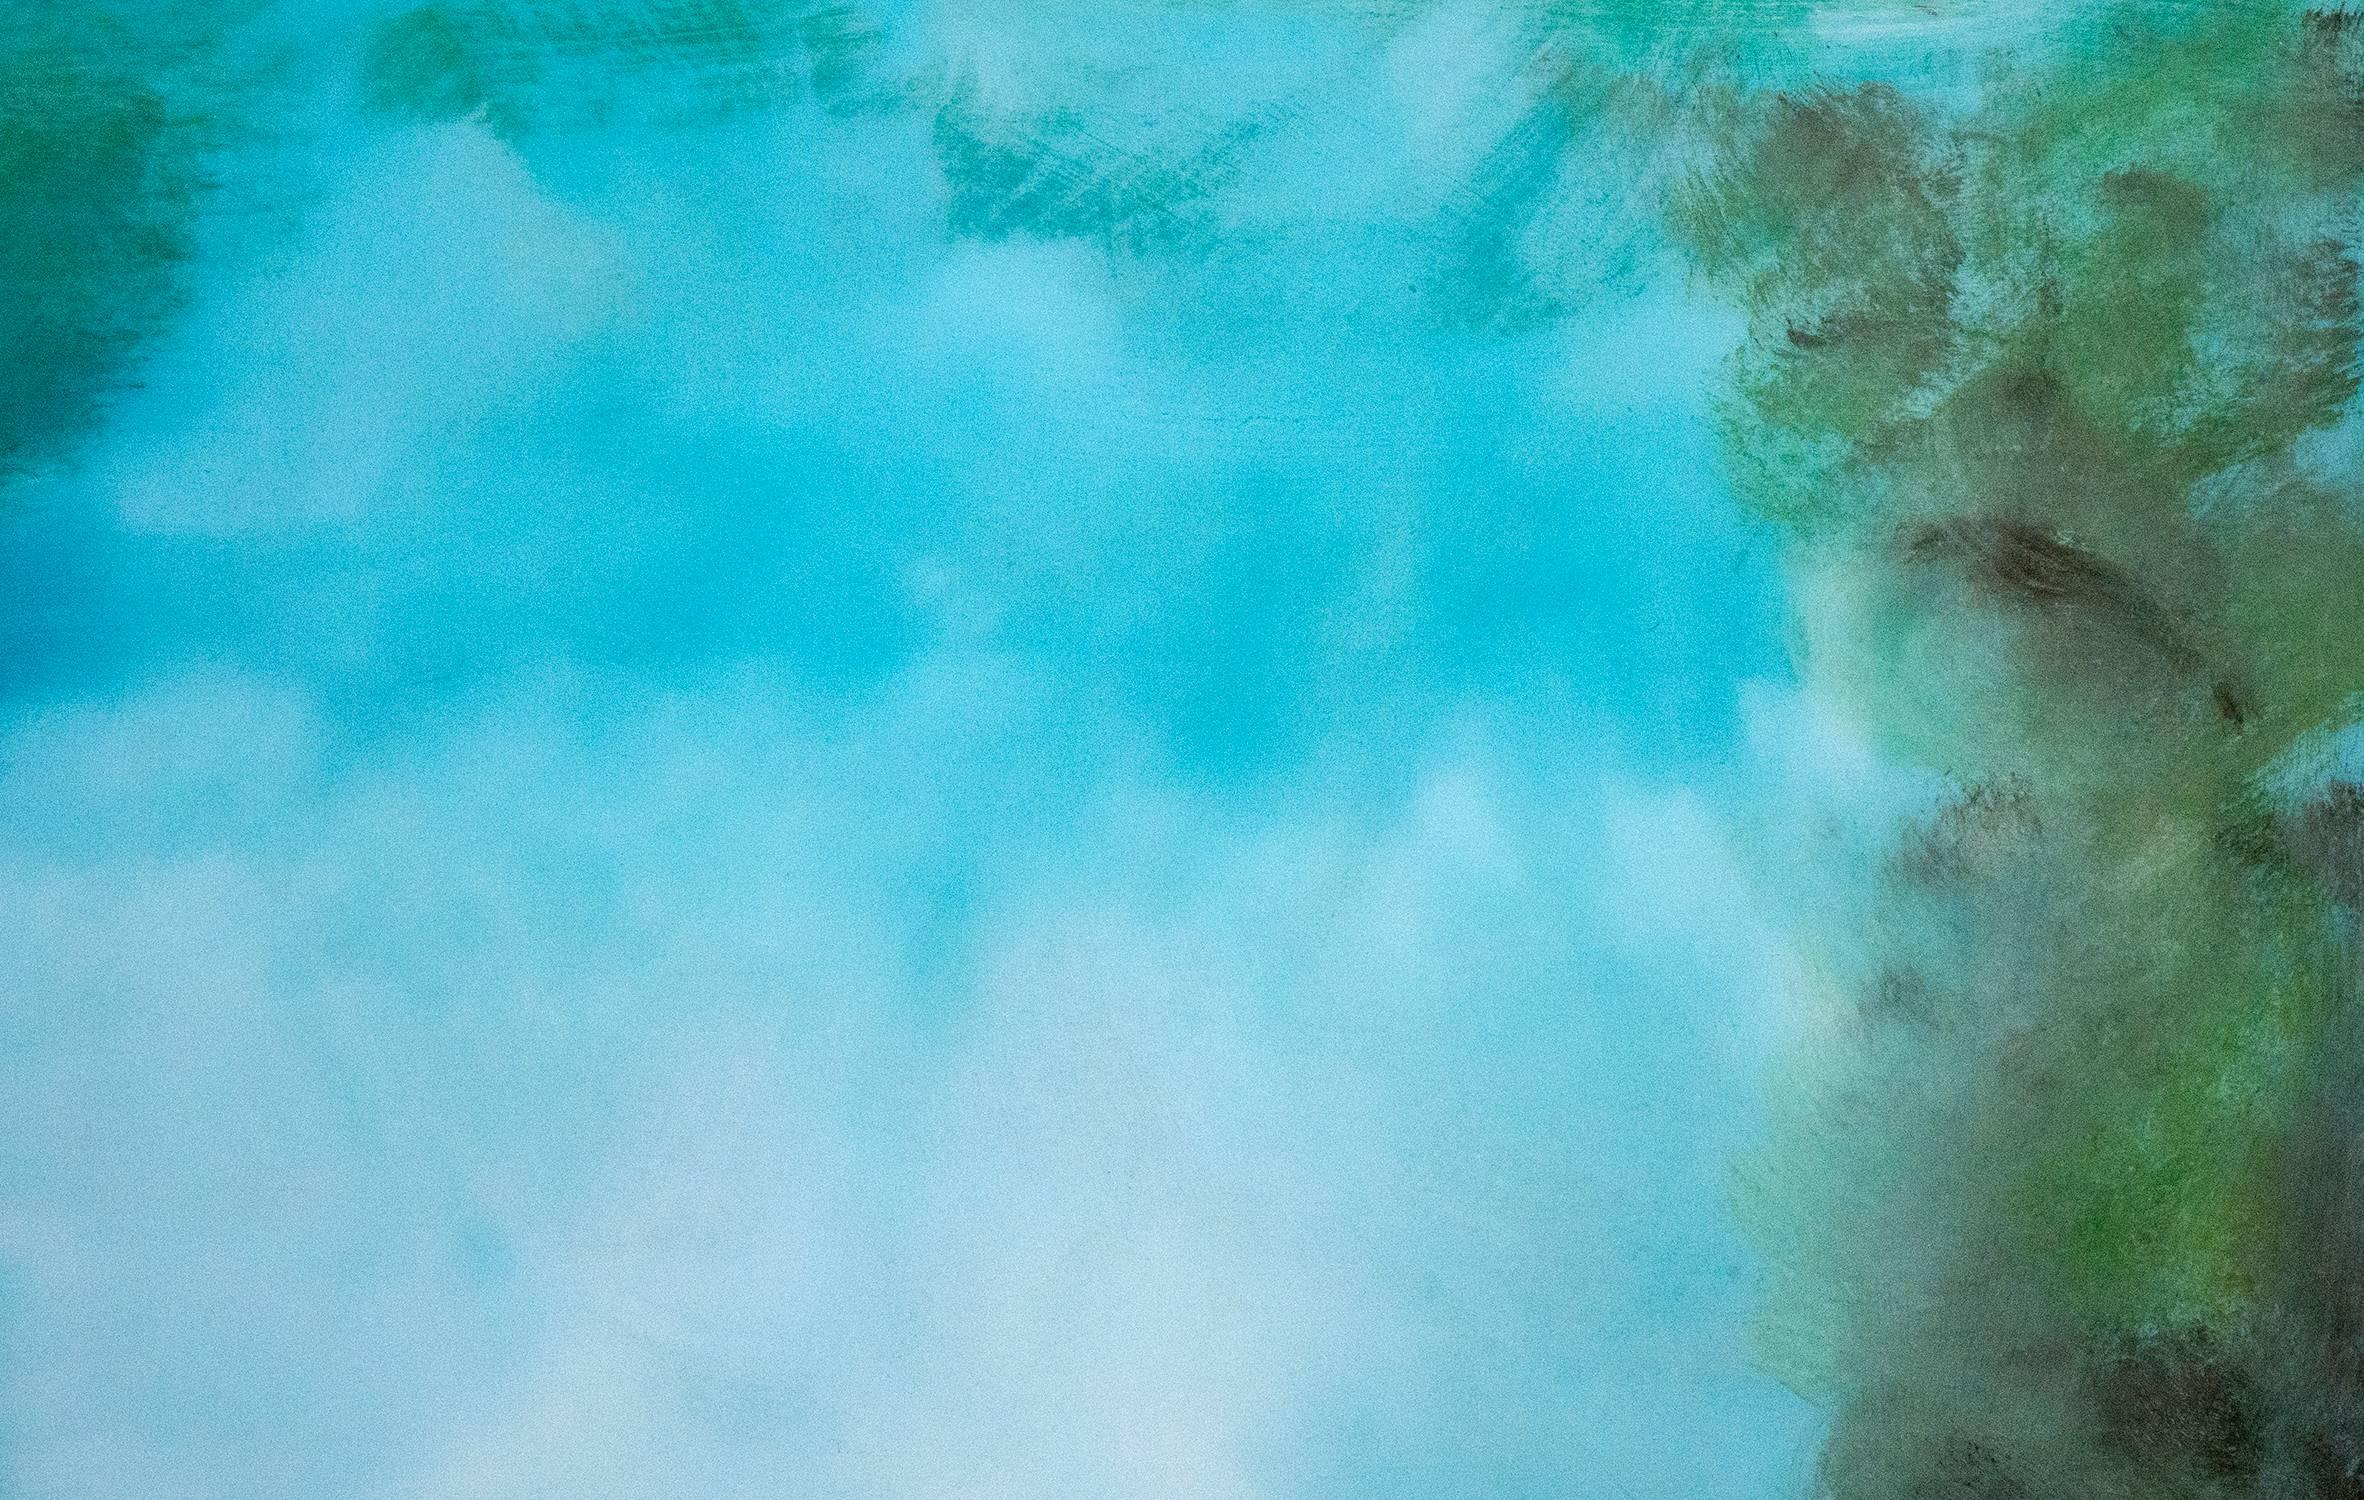 Auf diesem leuchtenden und stimmungsvollen Gemälde von Jay Hodgins brennt eine leuchtende, grün-blau umrahmte Öffnung, die sich im Wasser spiegelt, durch einen azurblauen Himmel. Der Künstler trägt Schichten von Acryl auf, die mit einem glänzenden